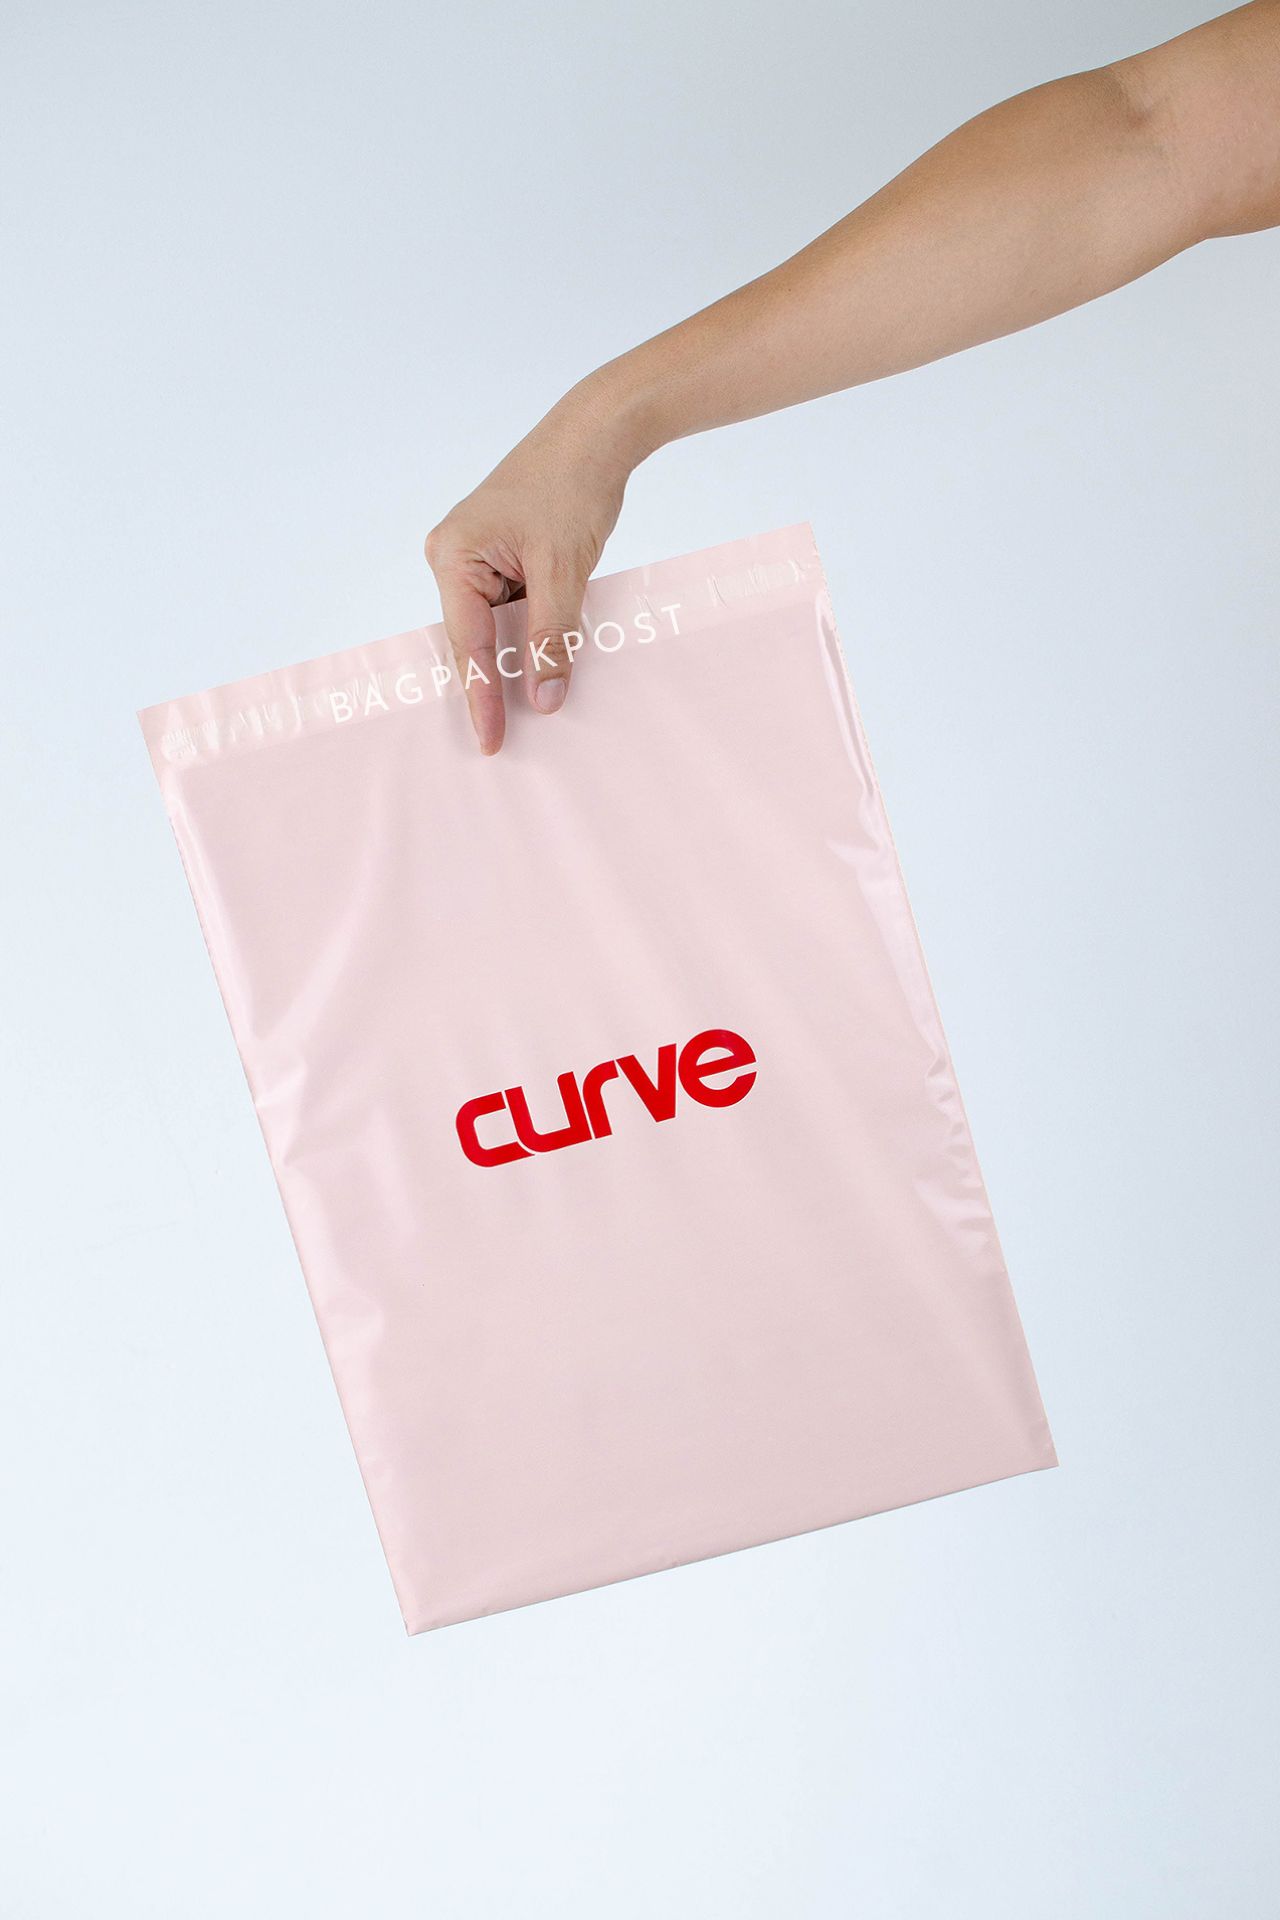 ผลิตถุงไปรษณีย์ ซองไปรษณีย์พิมพ์ลาย แบรนด์ CURVE ซองไปรษณีย์สีชมพู ถุงไปรษณีย์พิมพ์ลาย 3 BagPackPost